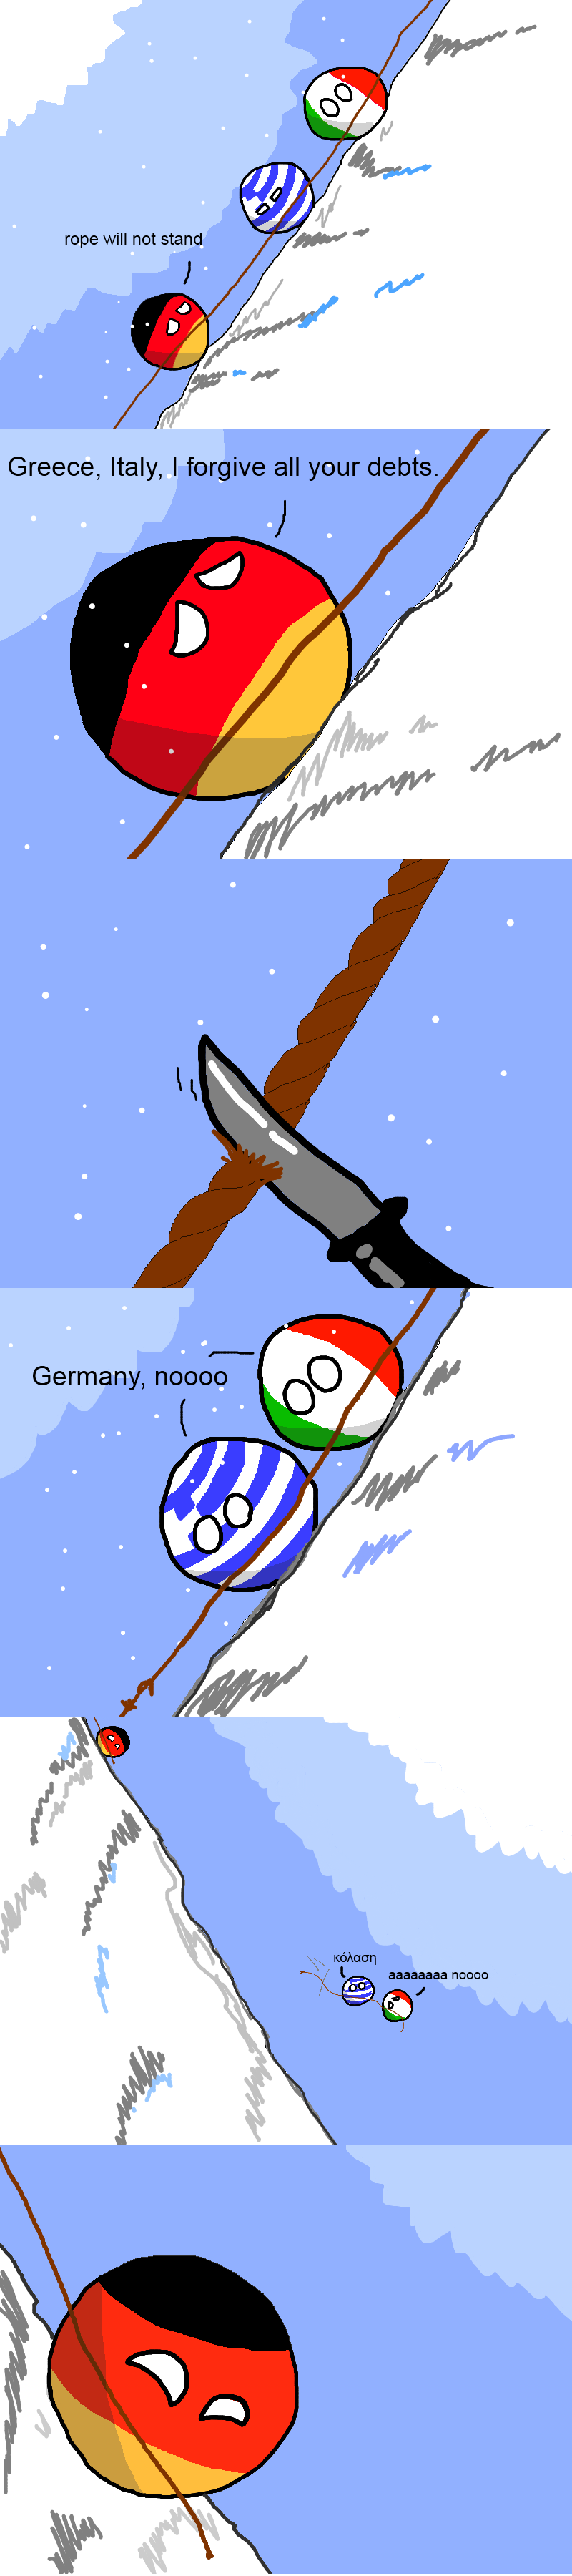 italy vs germany comics - rope will not stand Greece, Italy, I forgive all your debts. Germany, noooo aaaaaaaa noooo